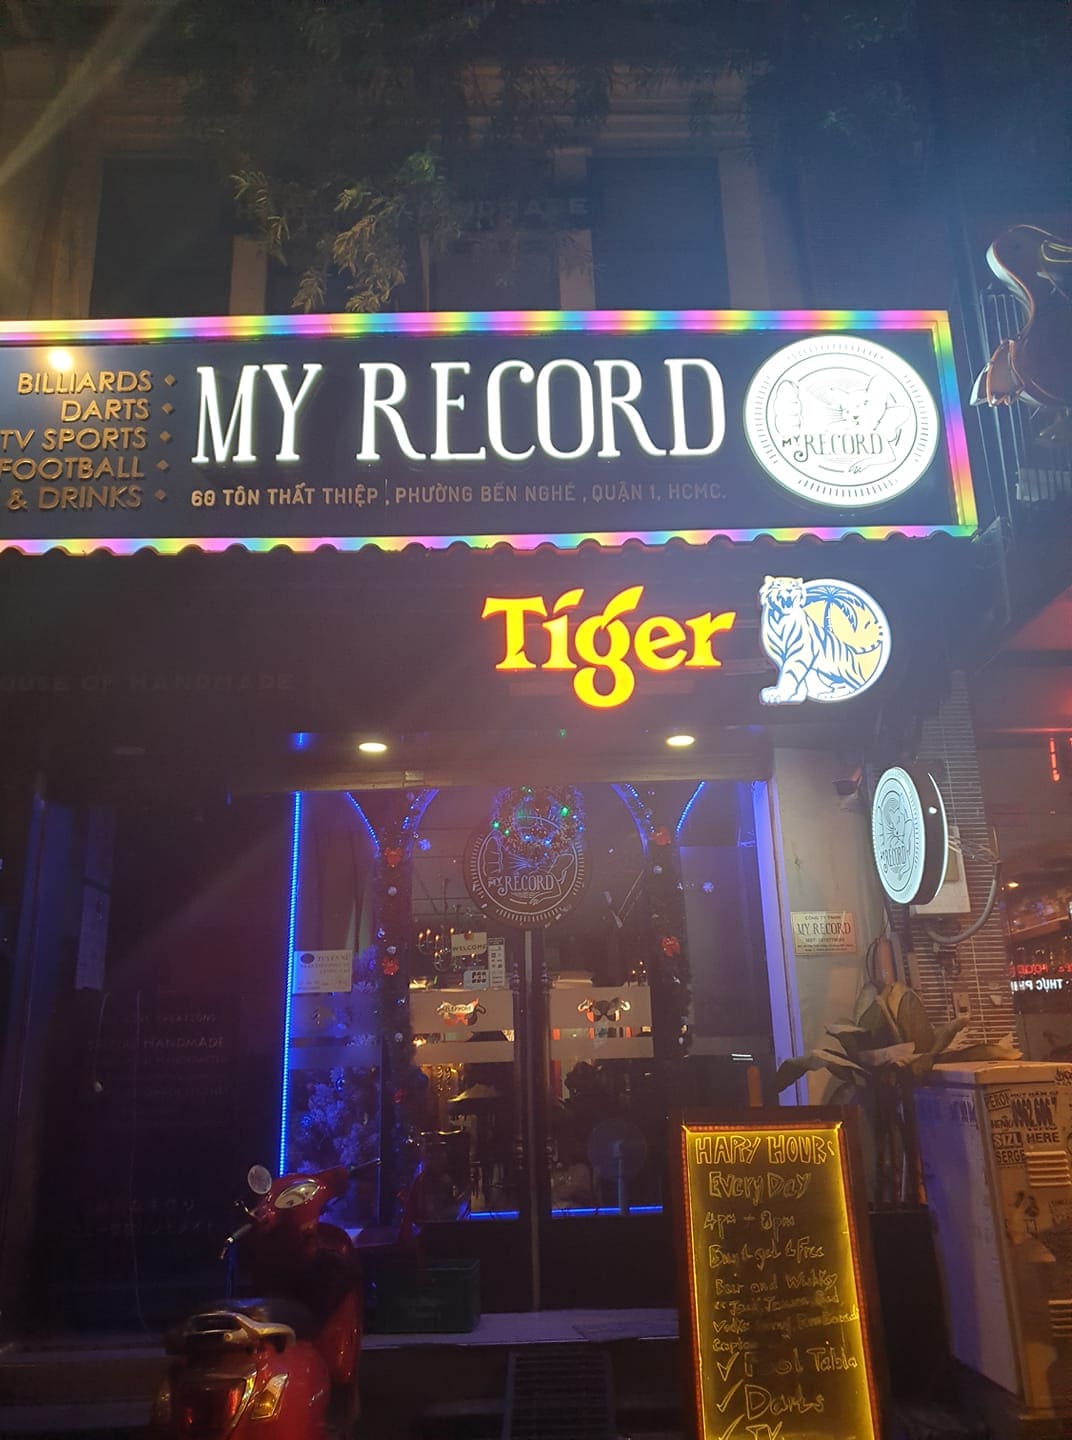 My Record Bar Hồ Chí Minh là một nơi tuyệt vời để trải nghiệm âm nhạc đỉnh cao cùng với bạn bè và người thân. Với không gian rộng rãi và thoải mái, phục vụ đầy đủ các loại đồ uống và đồ ăn nhẹ, đảm bảo sẽ làm bạn cảm thấy sảng khoái và thư giãn.